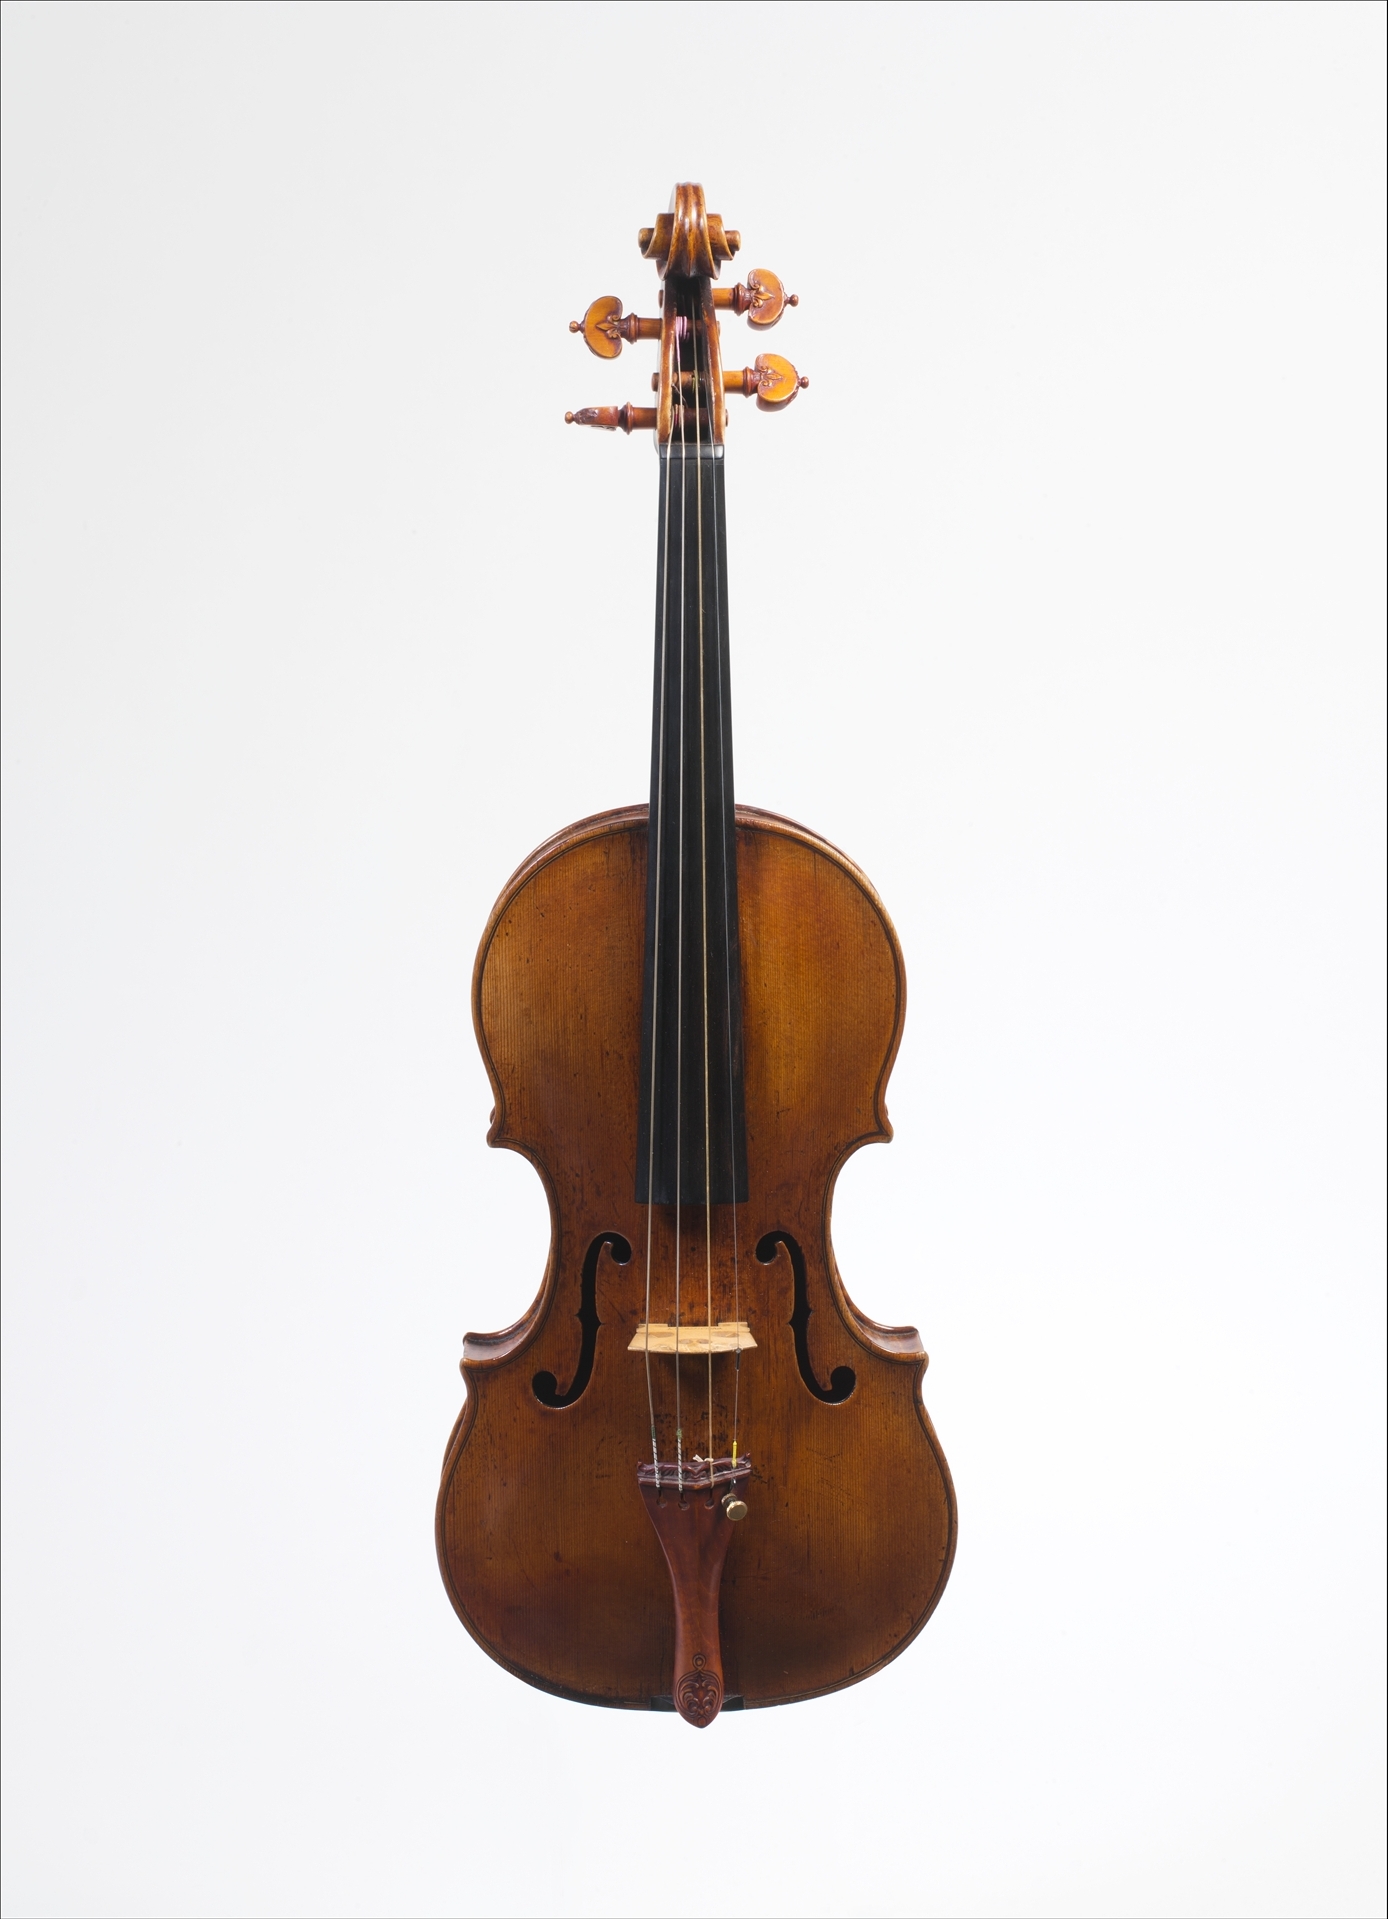 カーツ氏旧蔵のバイオリン by Andrea Amati - 1560年頃 - 57.4 x 20.2 cm 